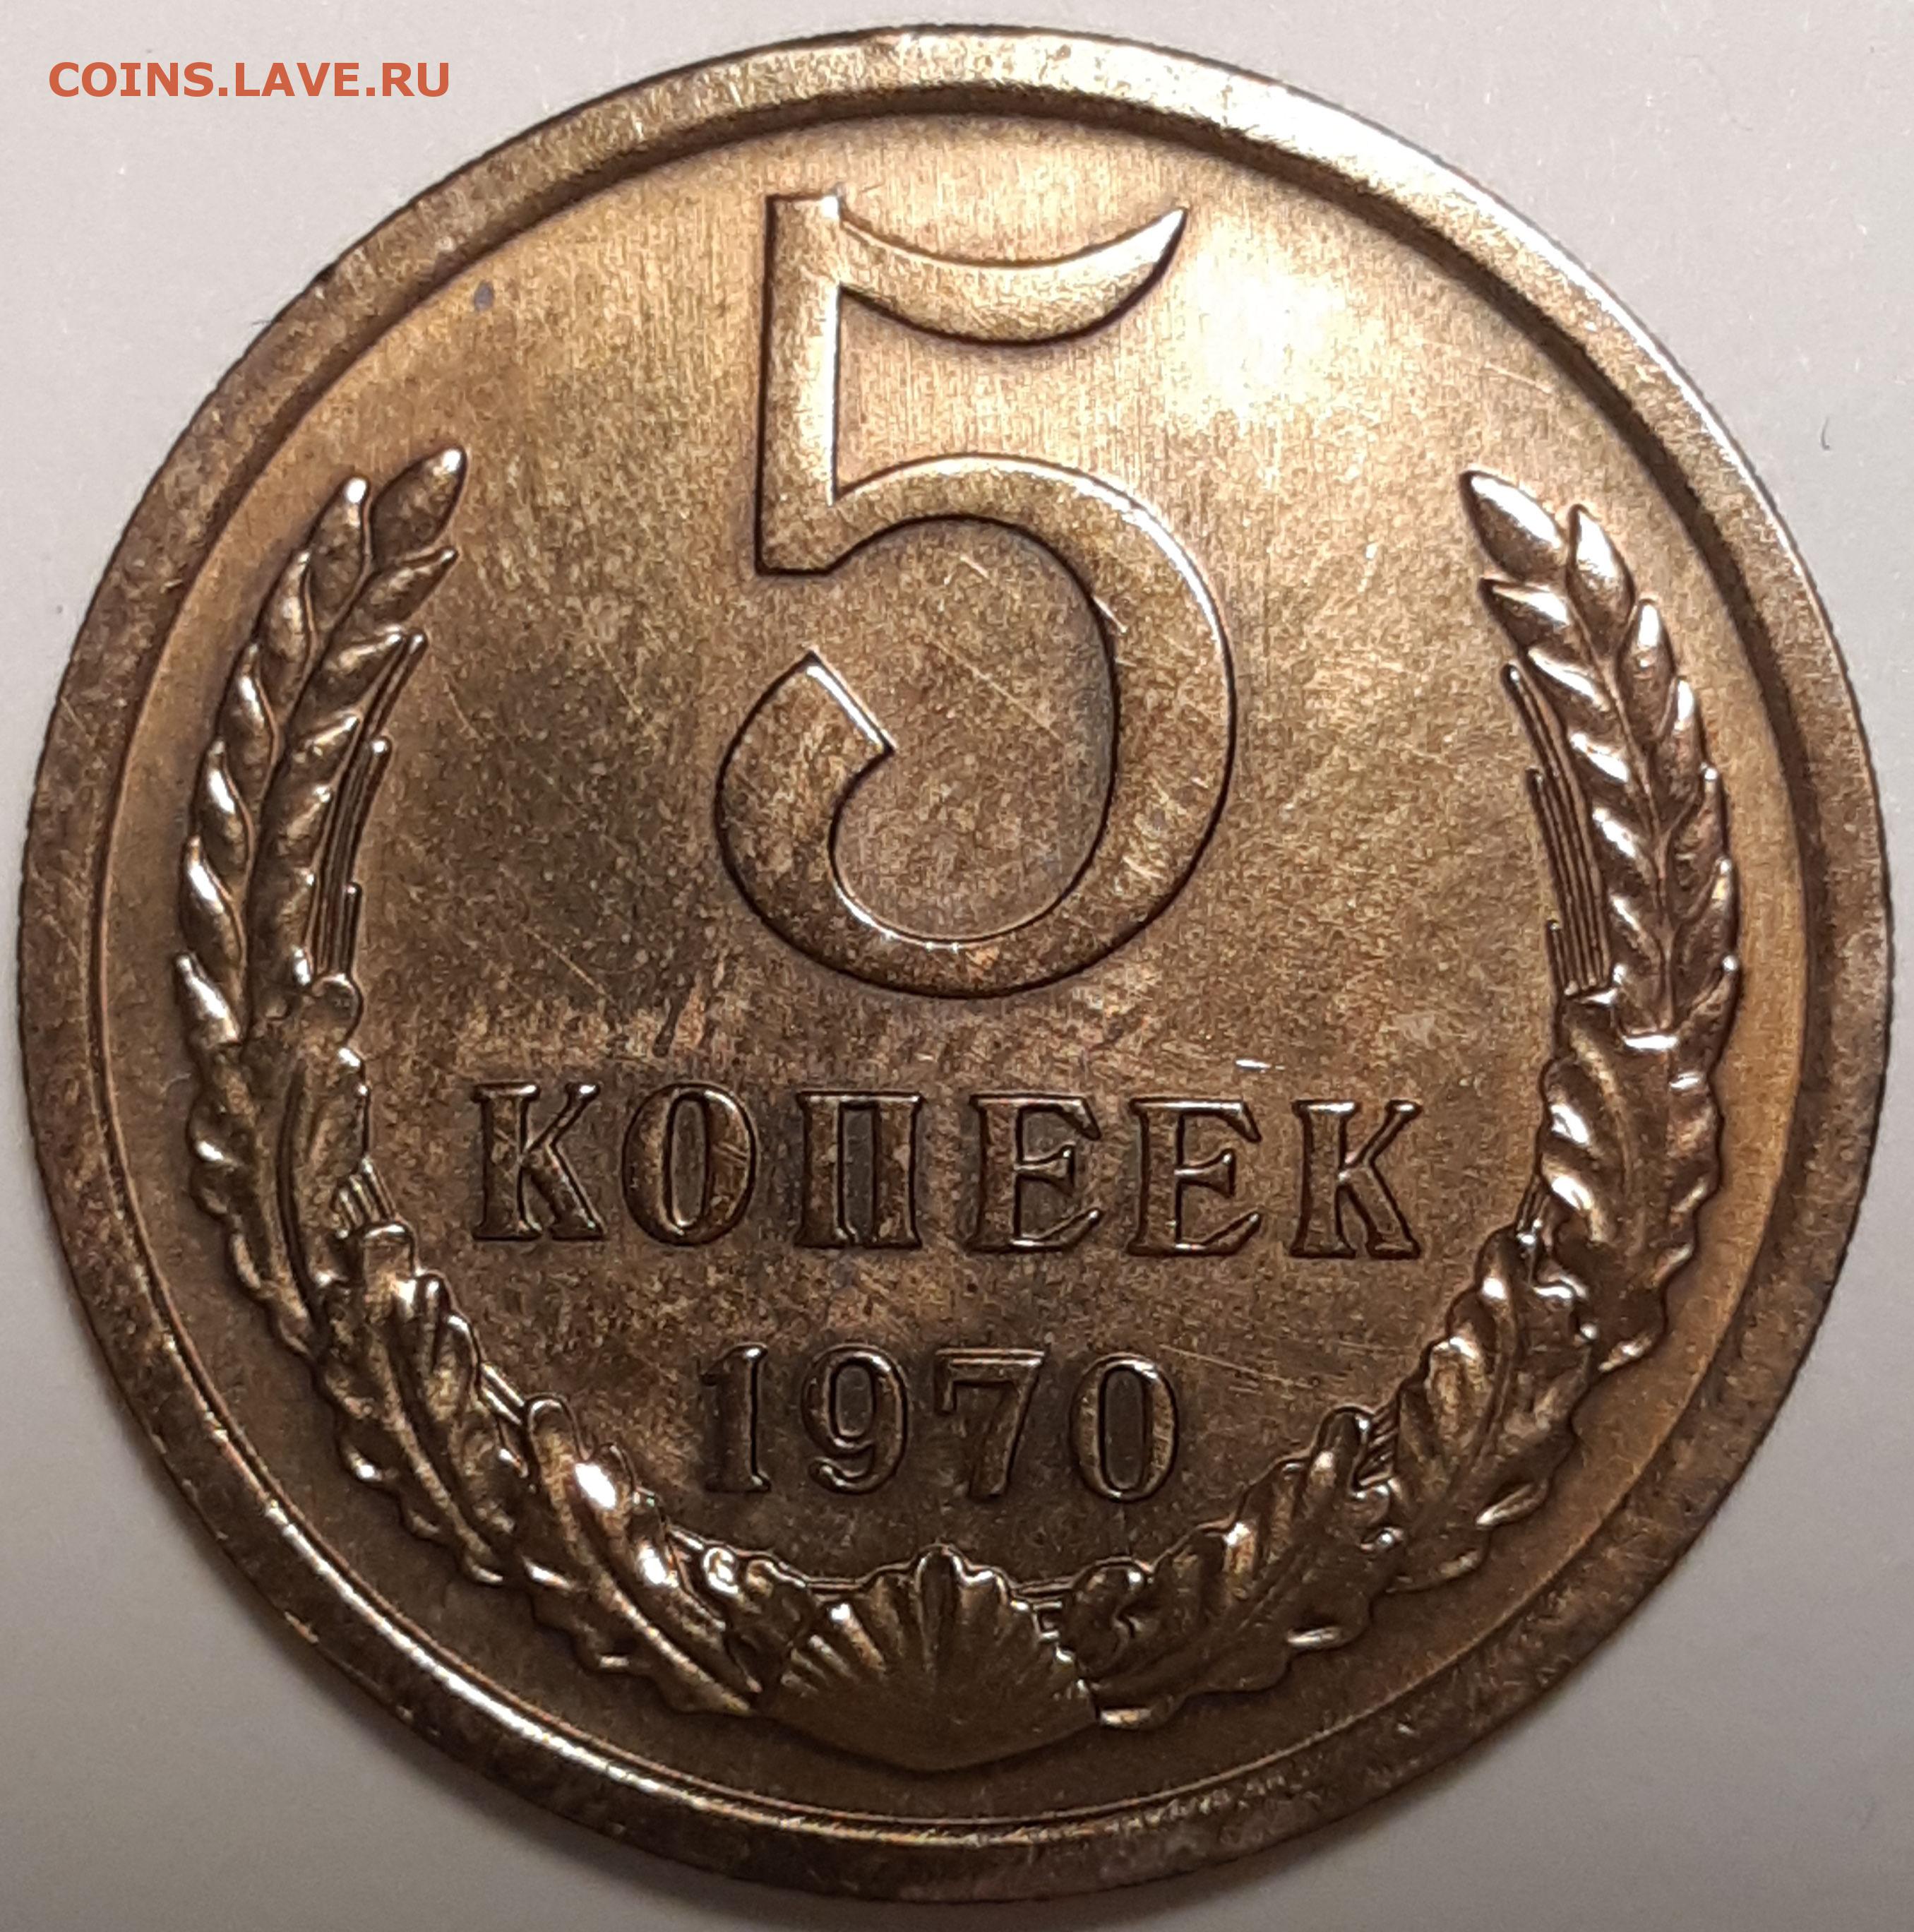 5 копеек 1970. 5 Копеек 1970 UNC. 25 Копеек 1970. Монеты черный квадрат.